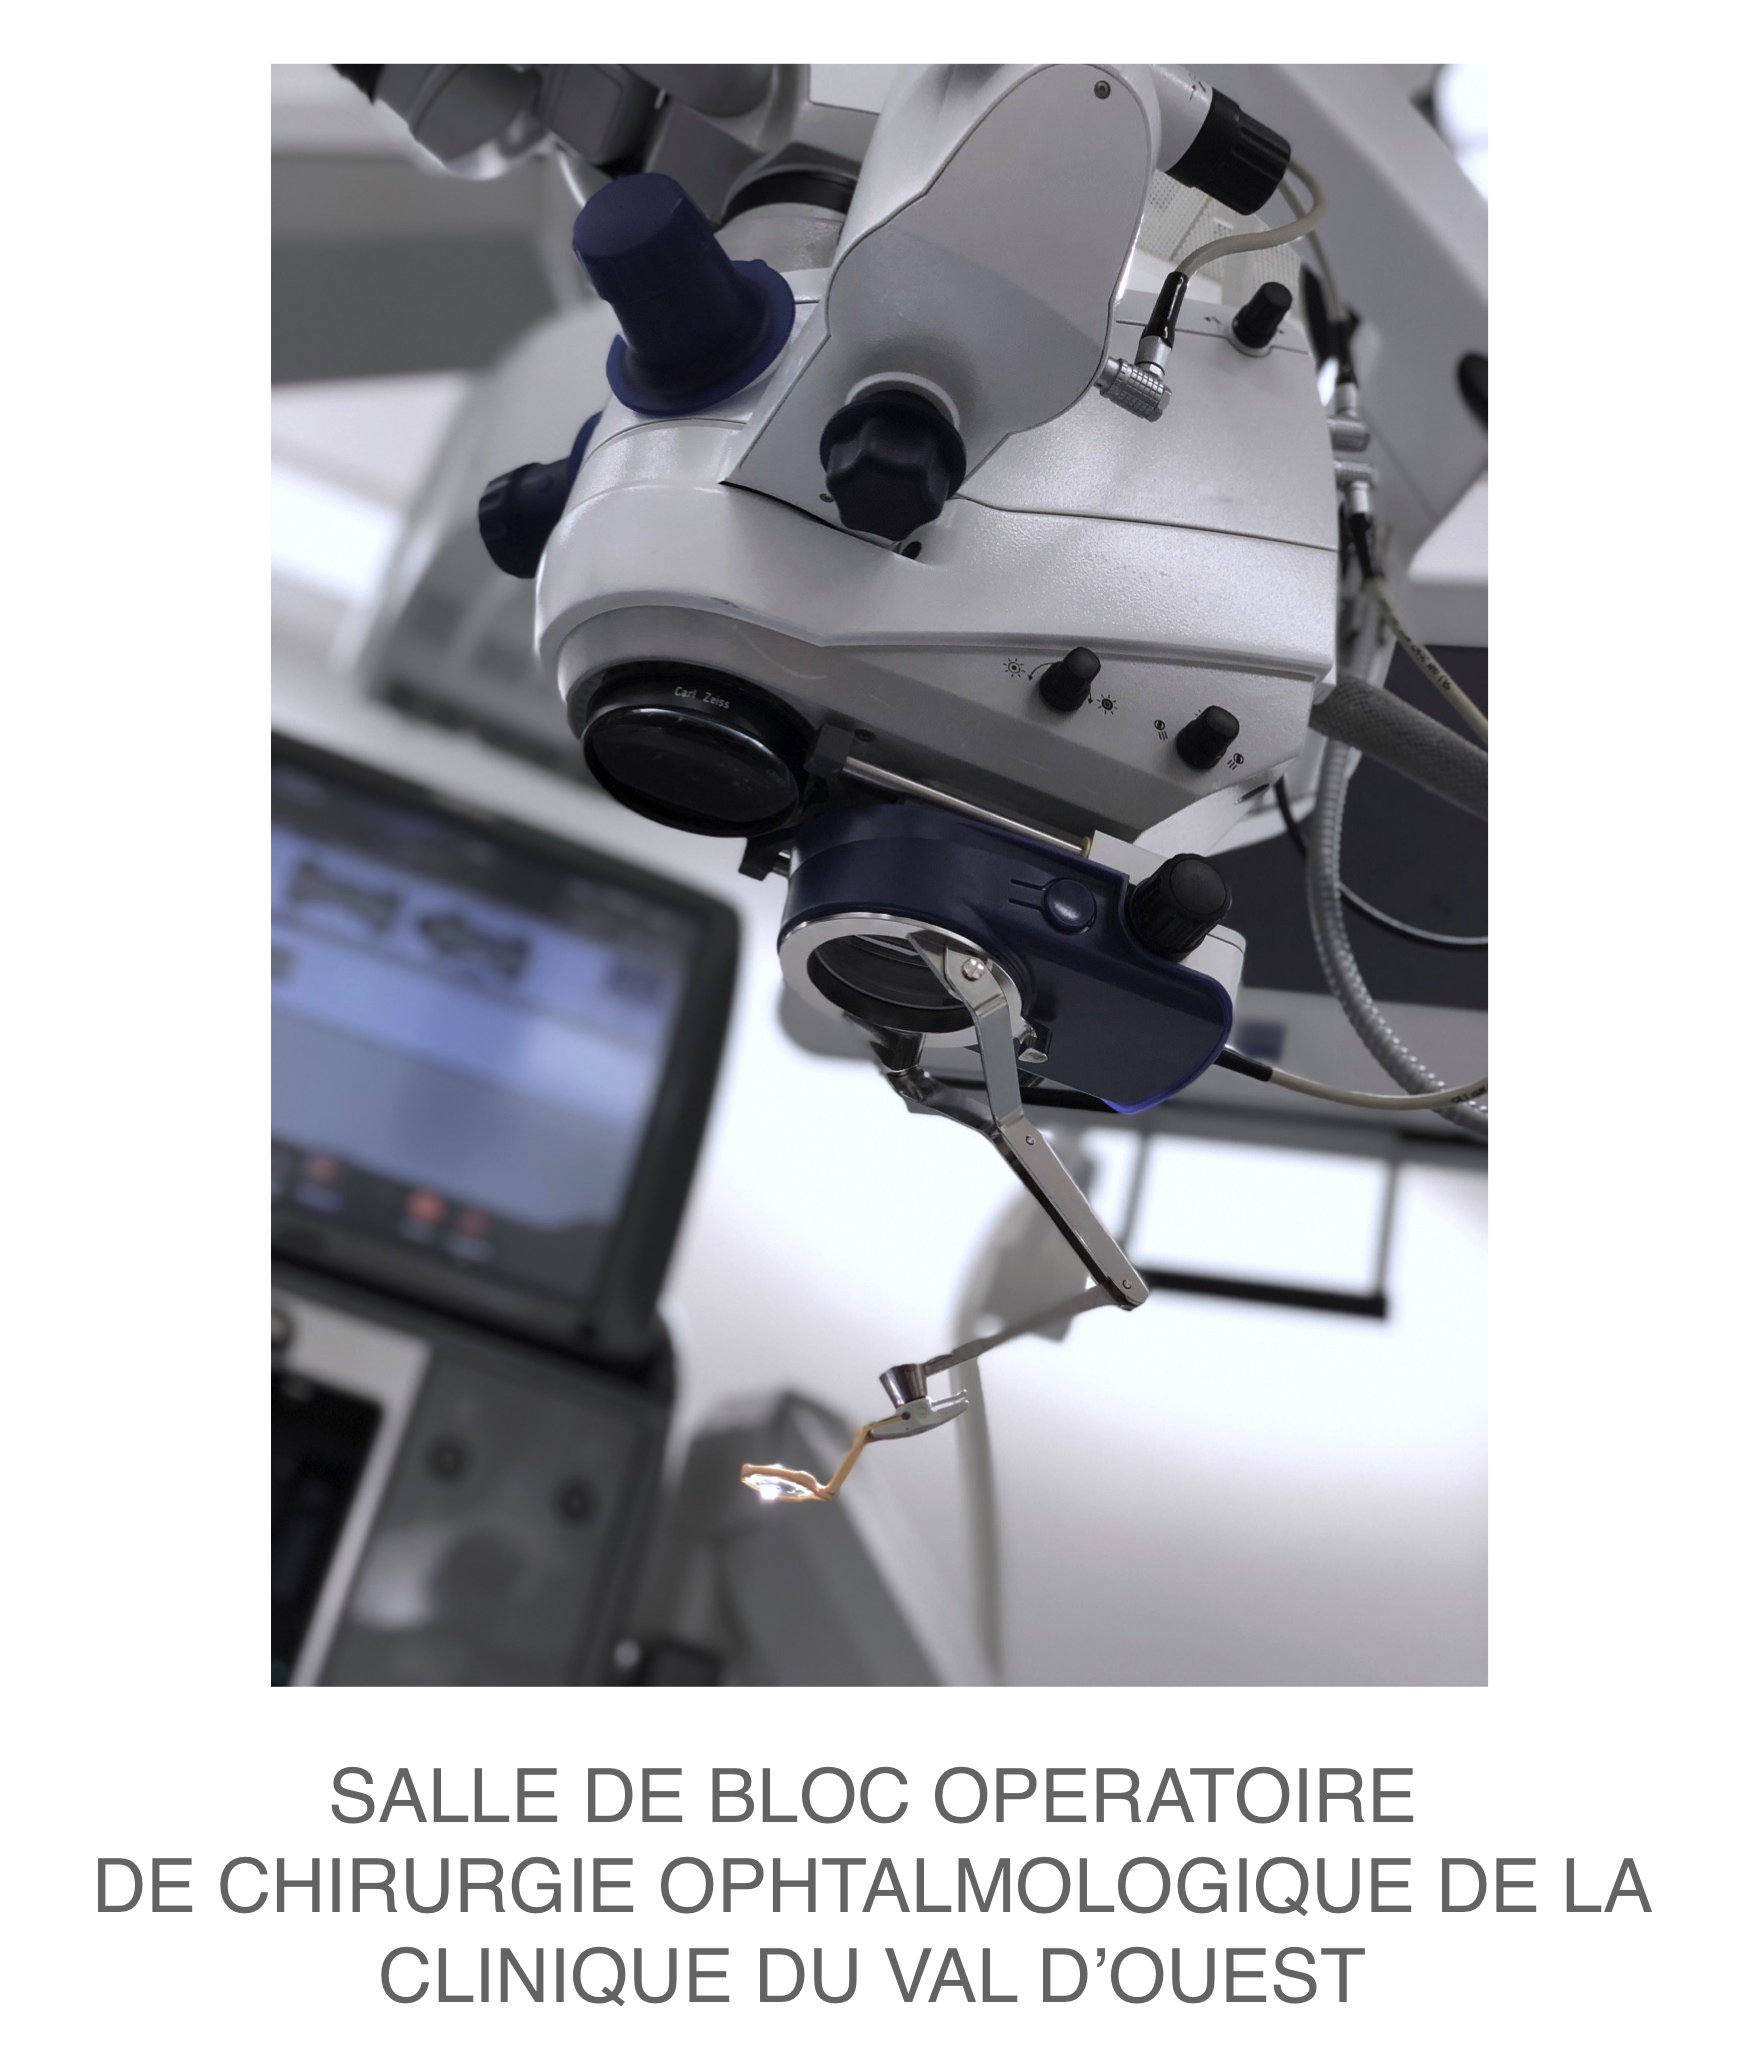 membrane épirétinienne : prise en charge chirurgicale sous microscope opératoire au bloc opératoire d'ophtalmologie de la clinique du Val d'Ouest